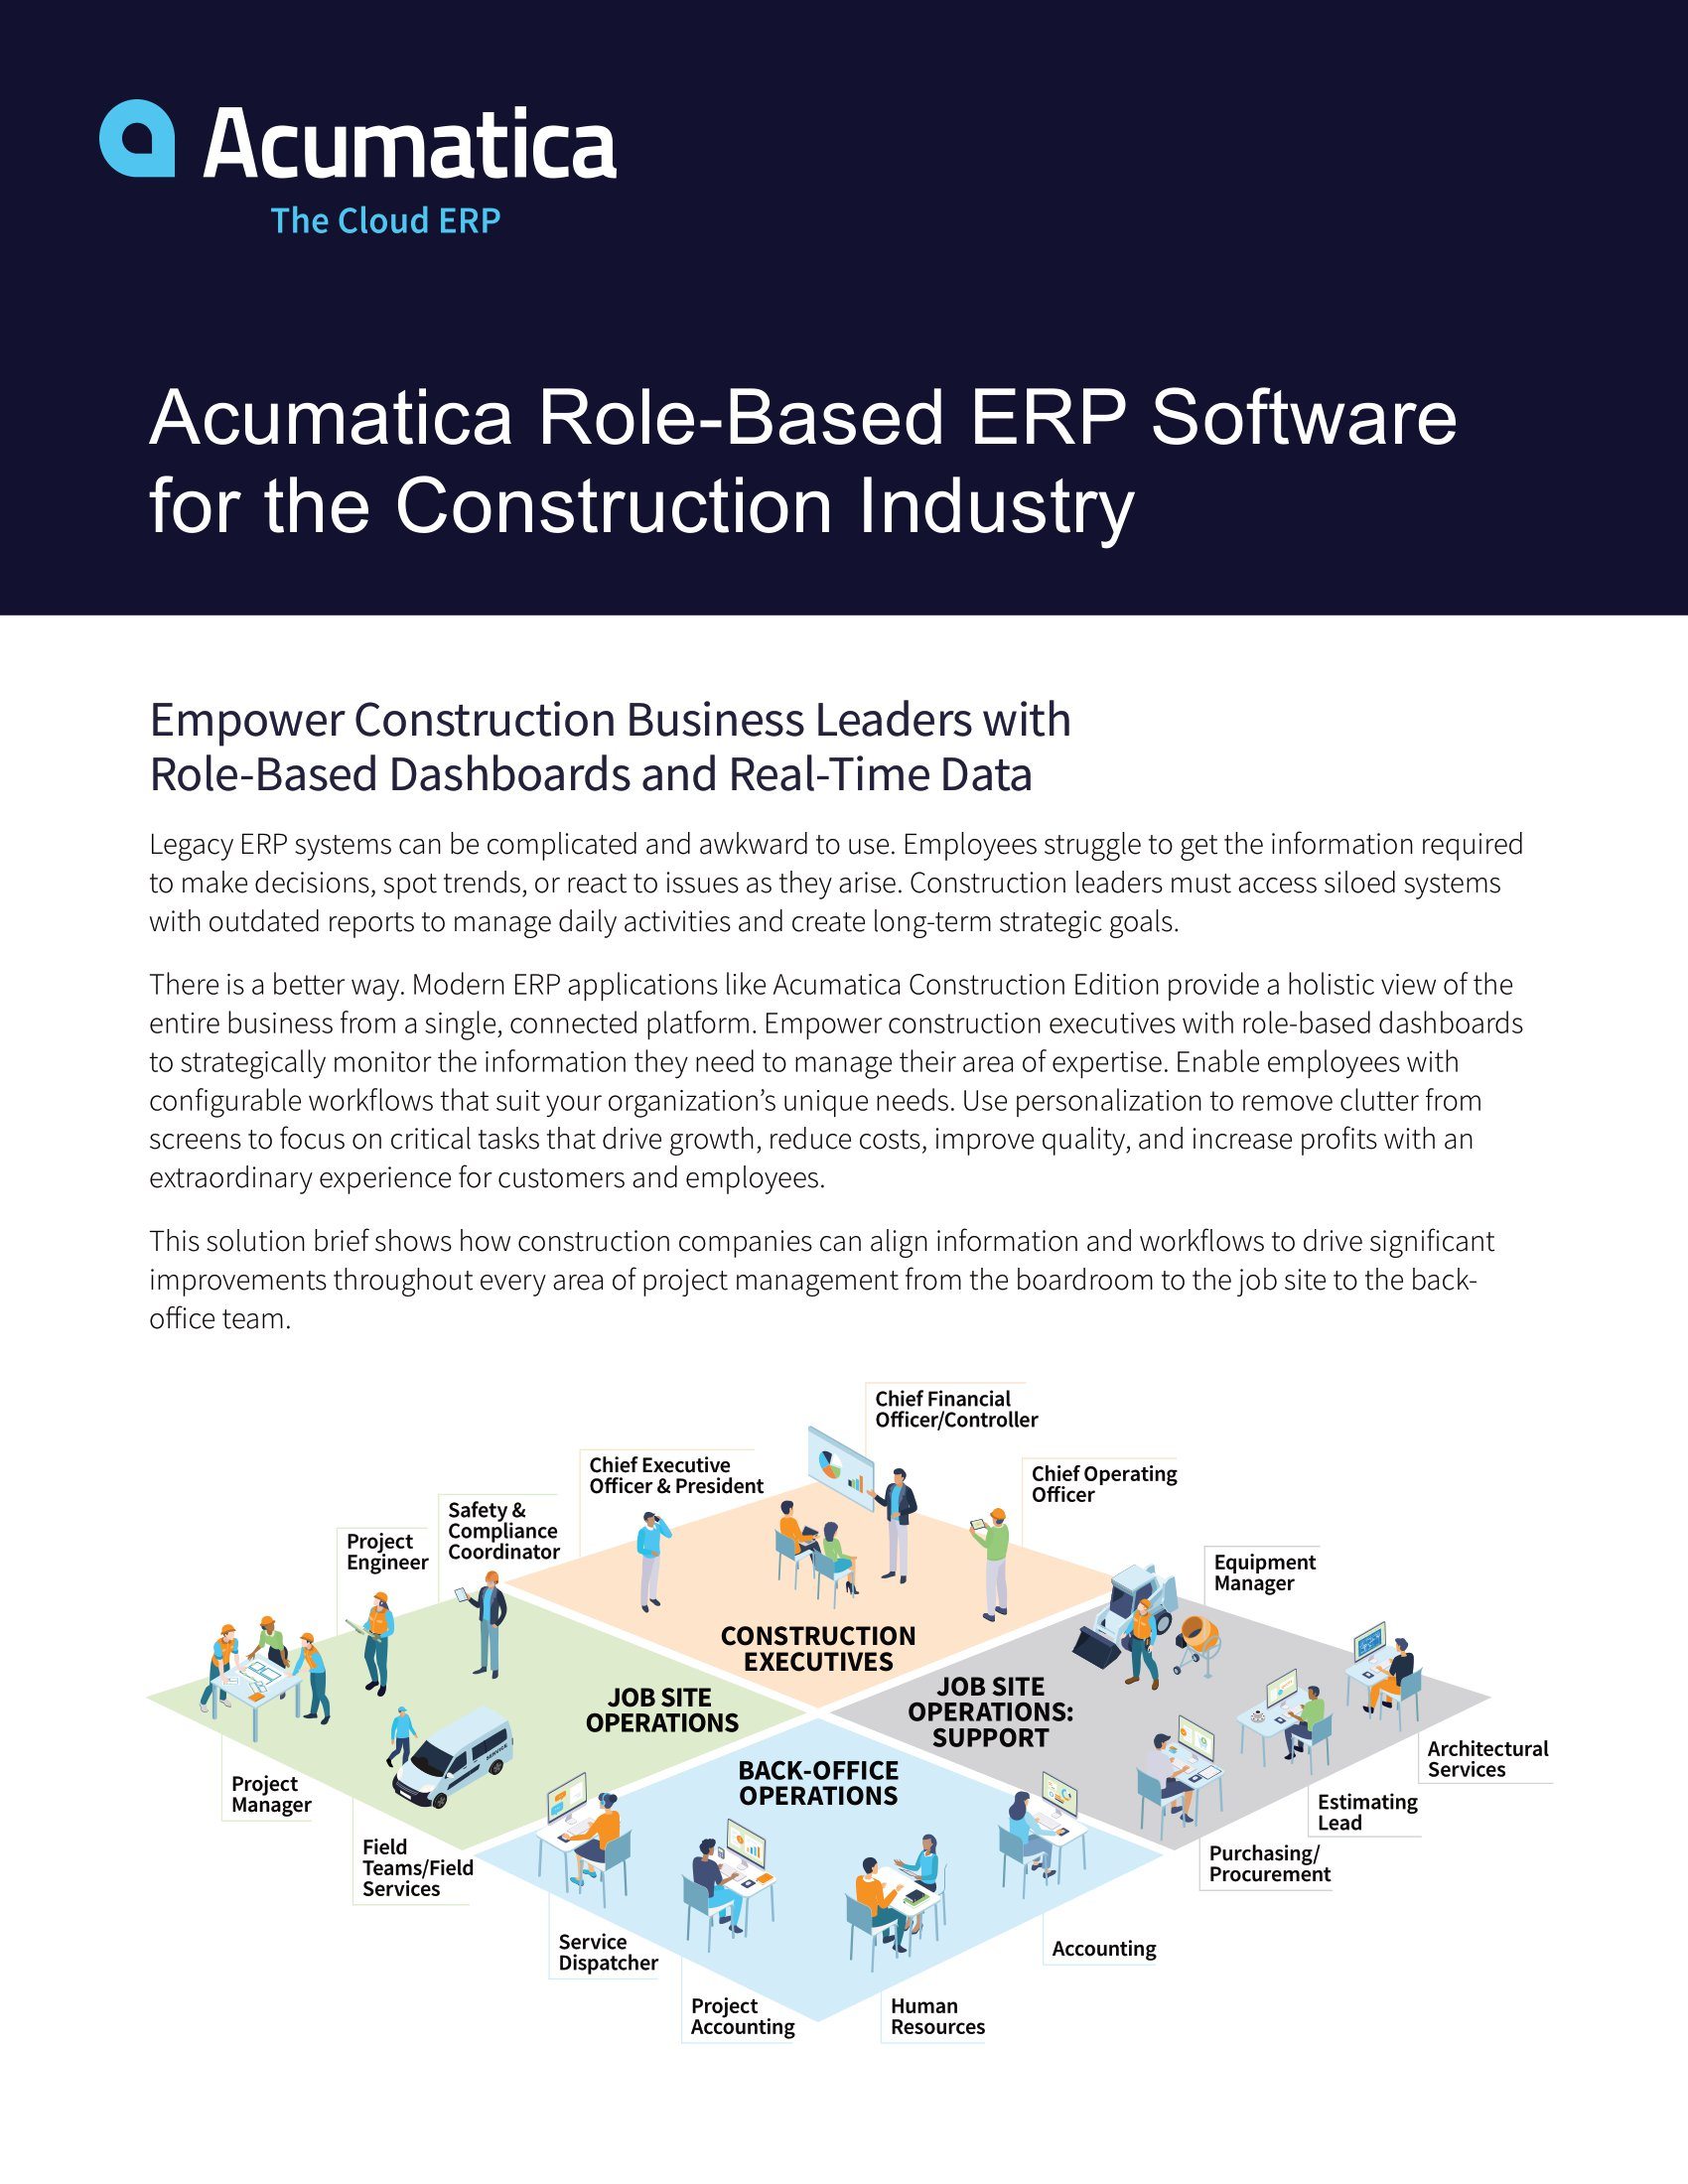 Múltiples funciones de construcción sólo requieren una plataforma ERP